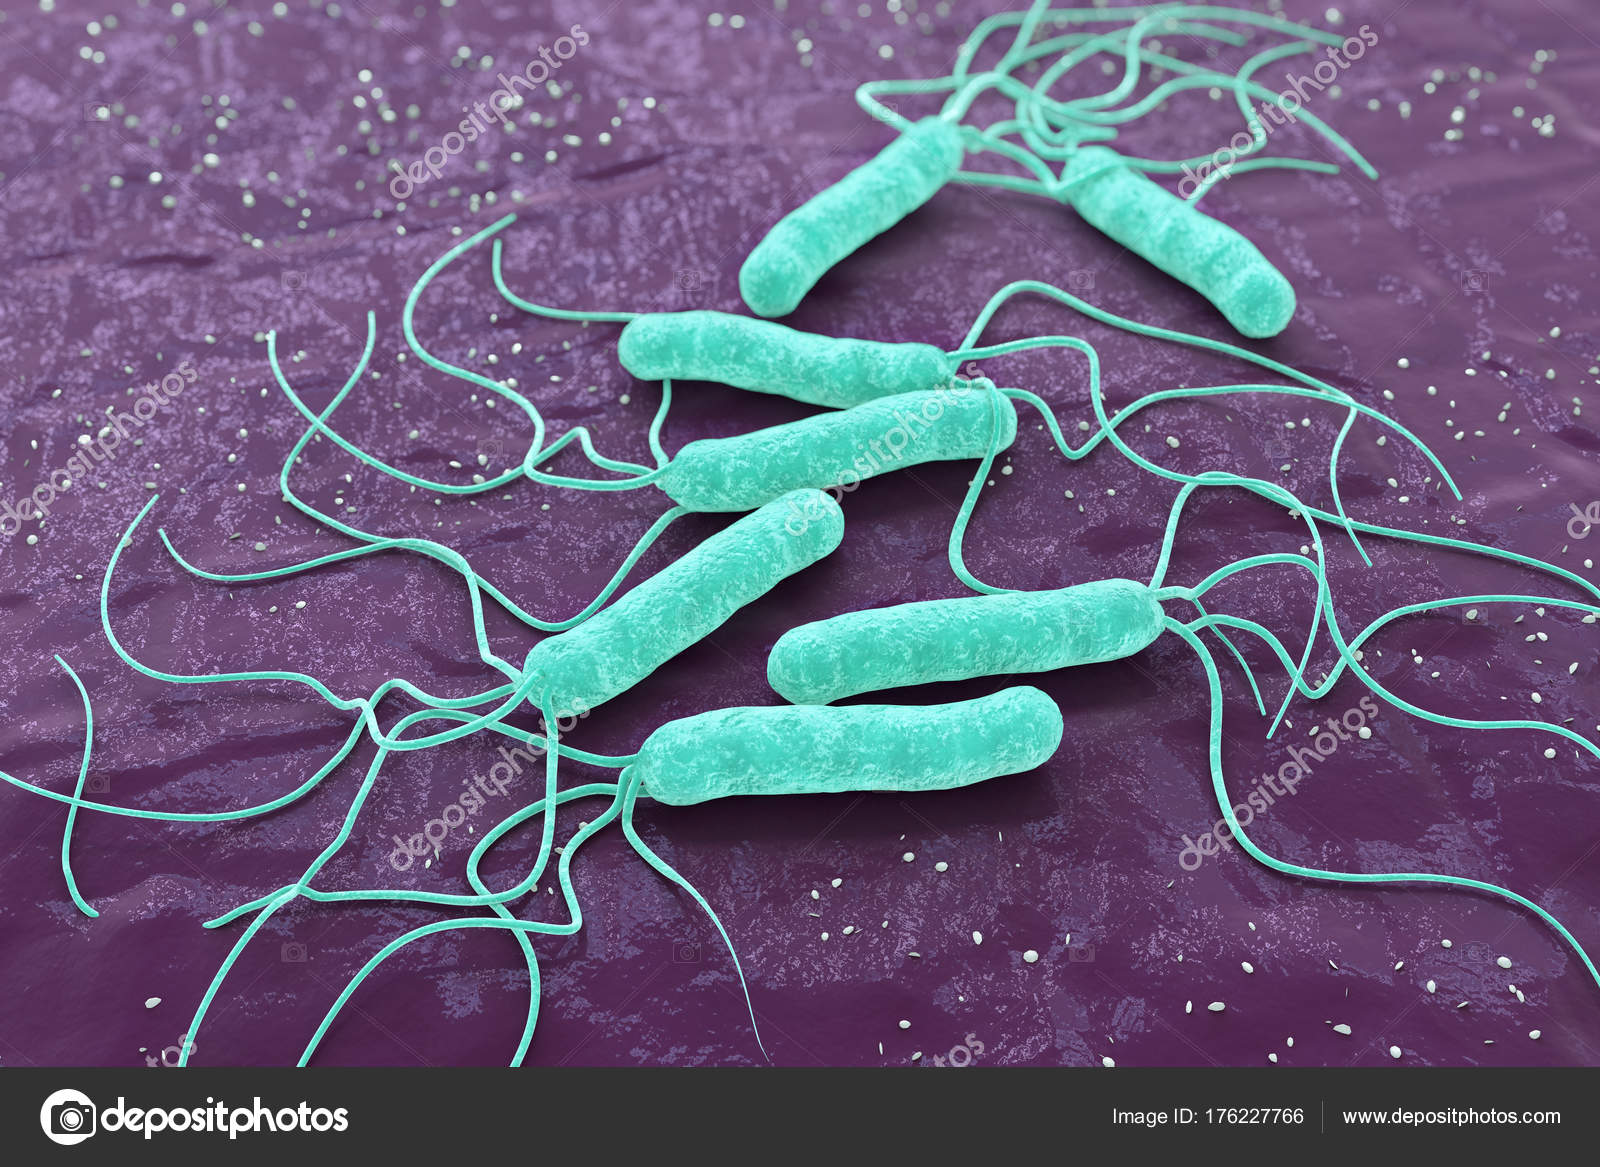 Желудочные бактерии